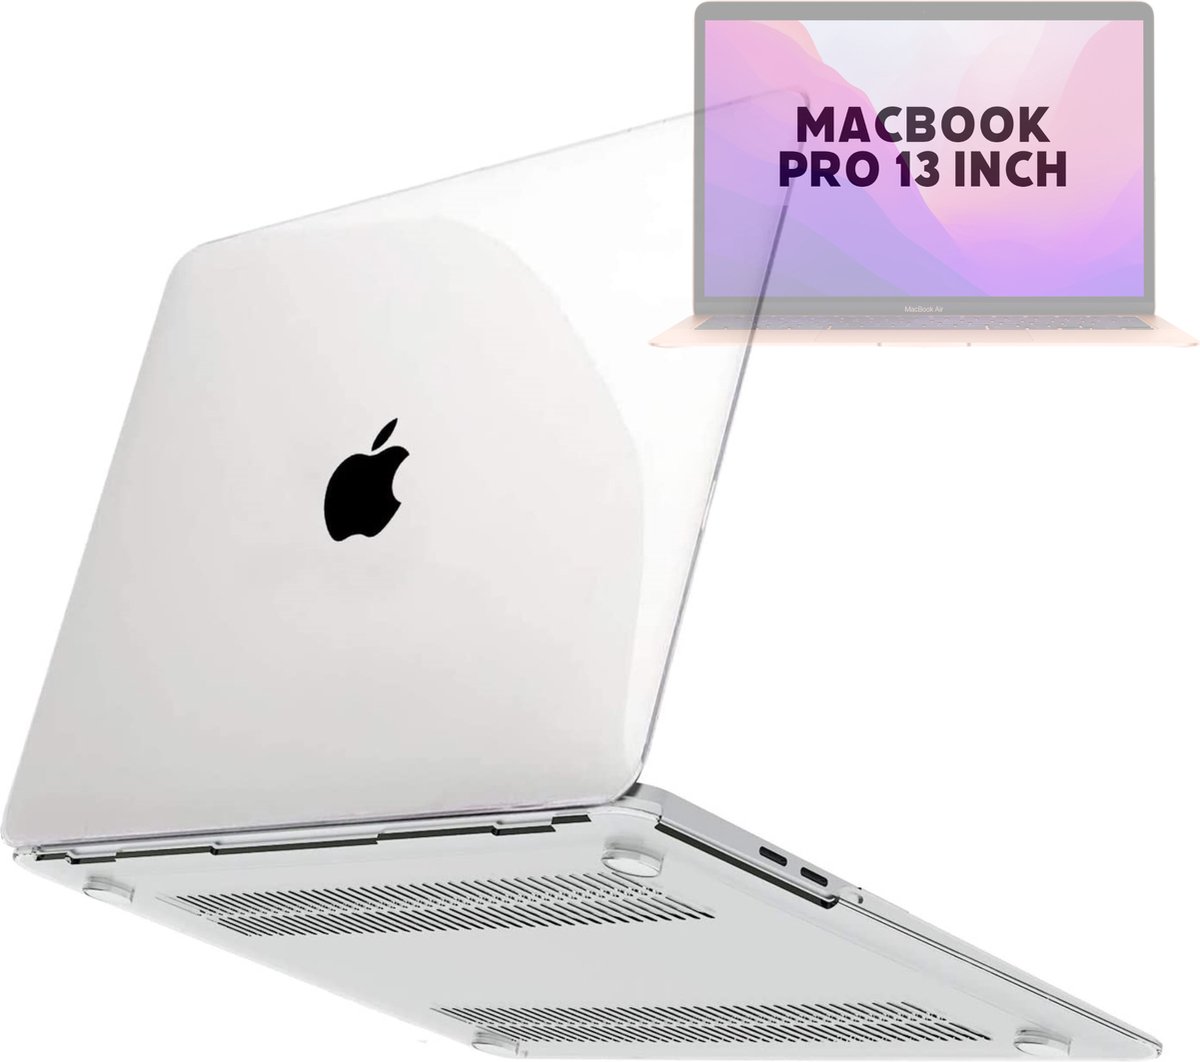 Coque rigide MacBook avec revêtement mat pour apple MacBook pro 13